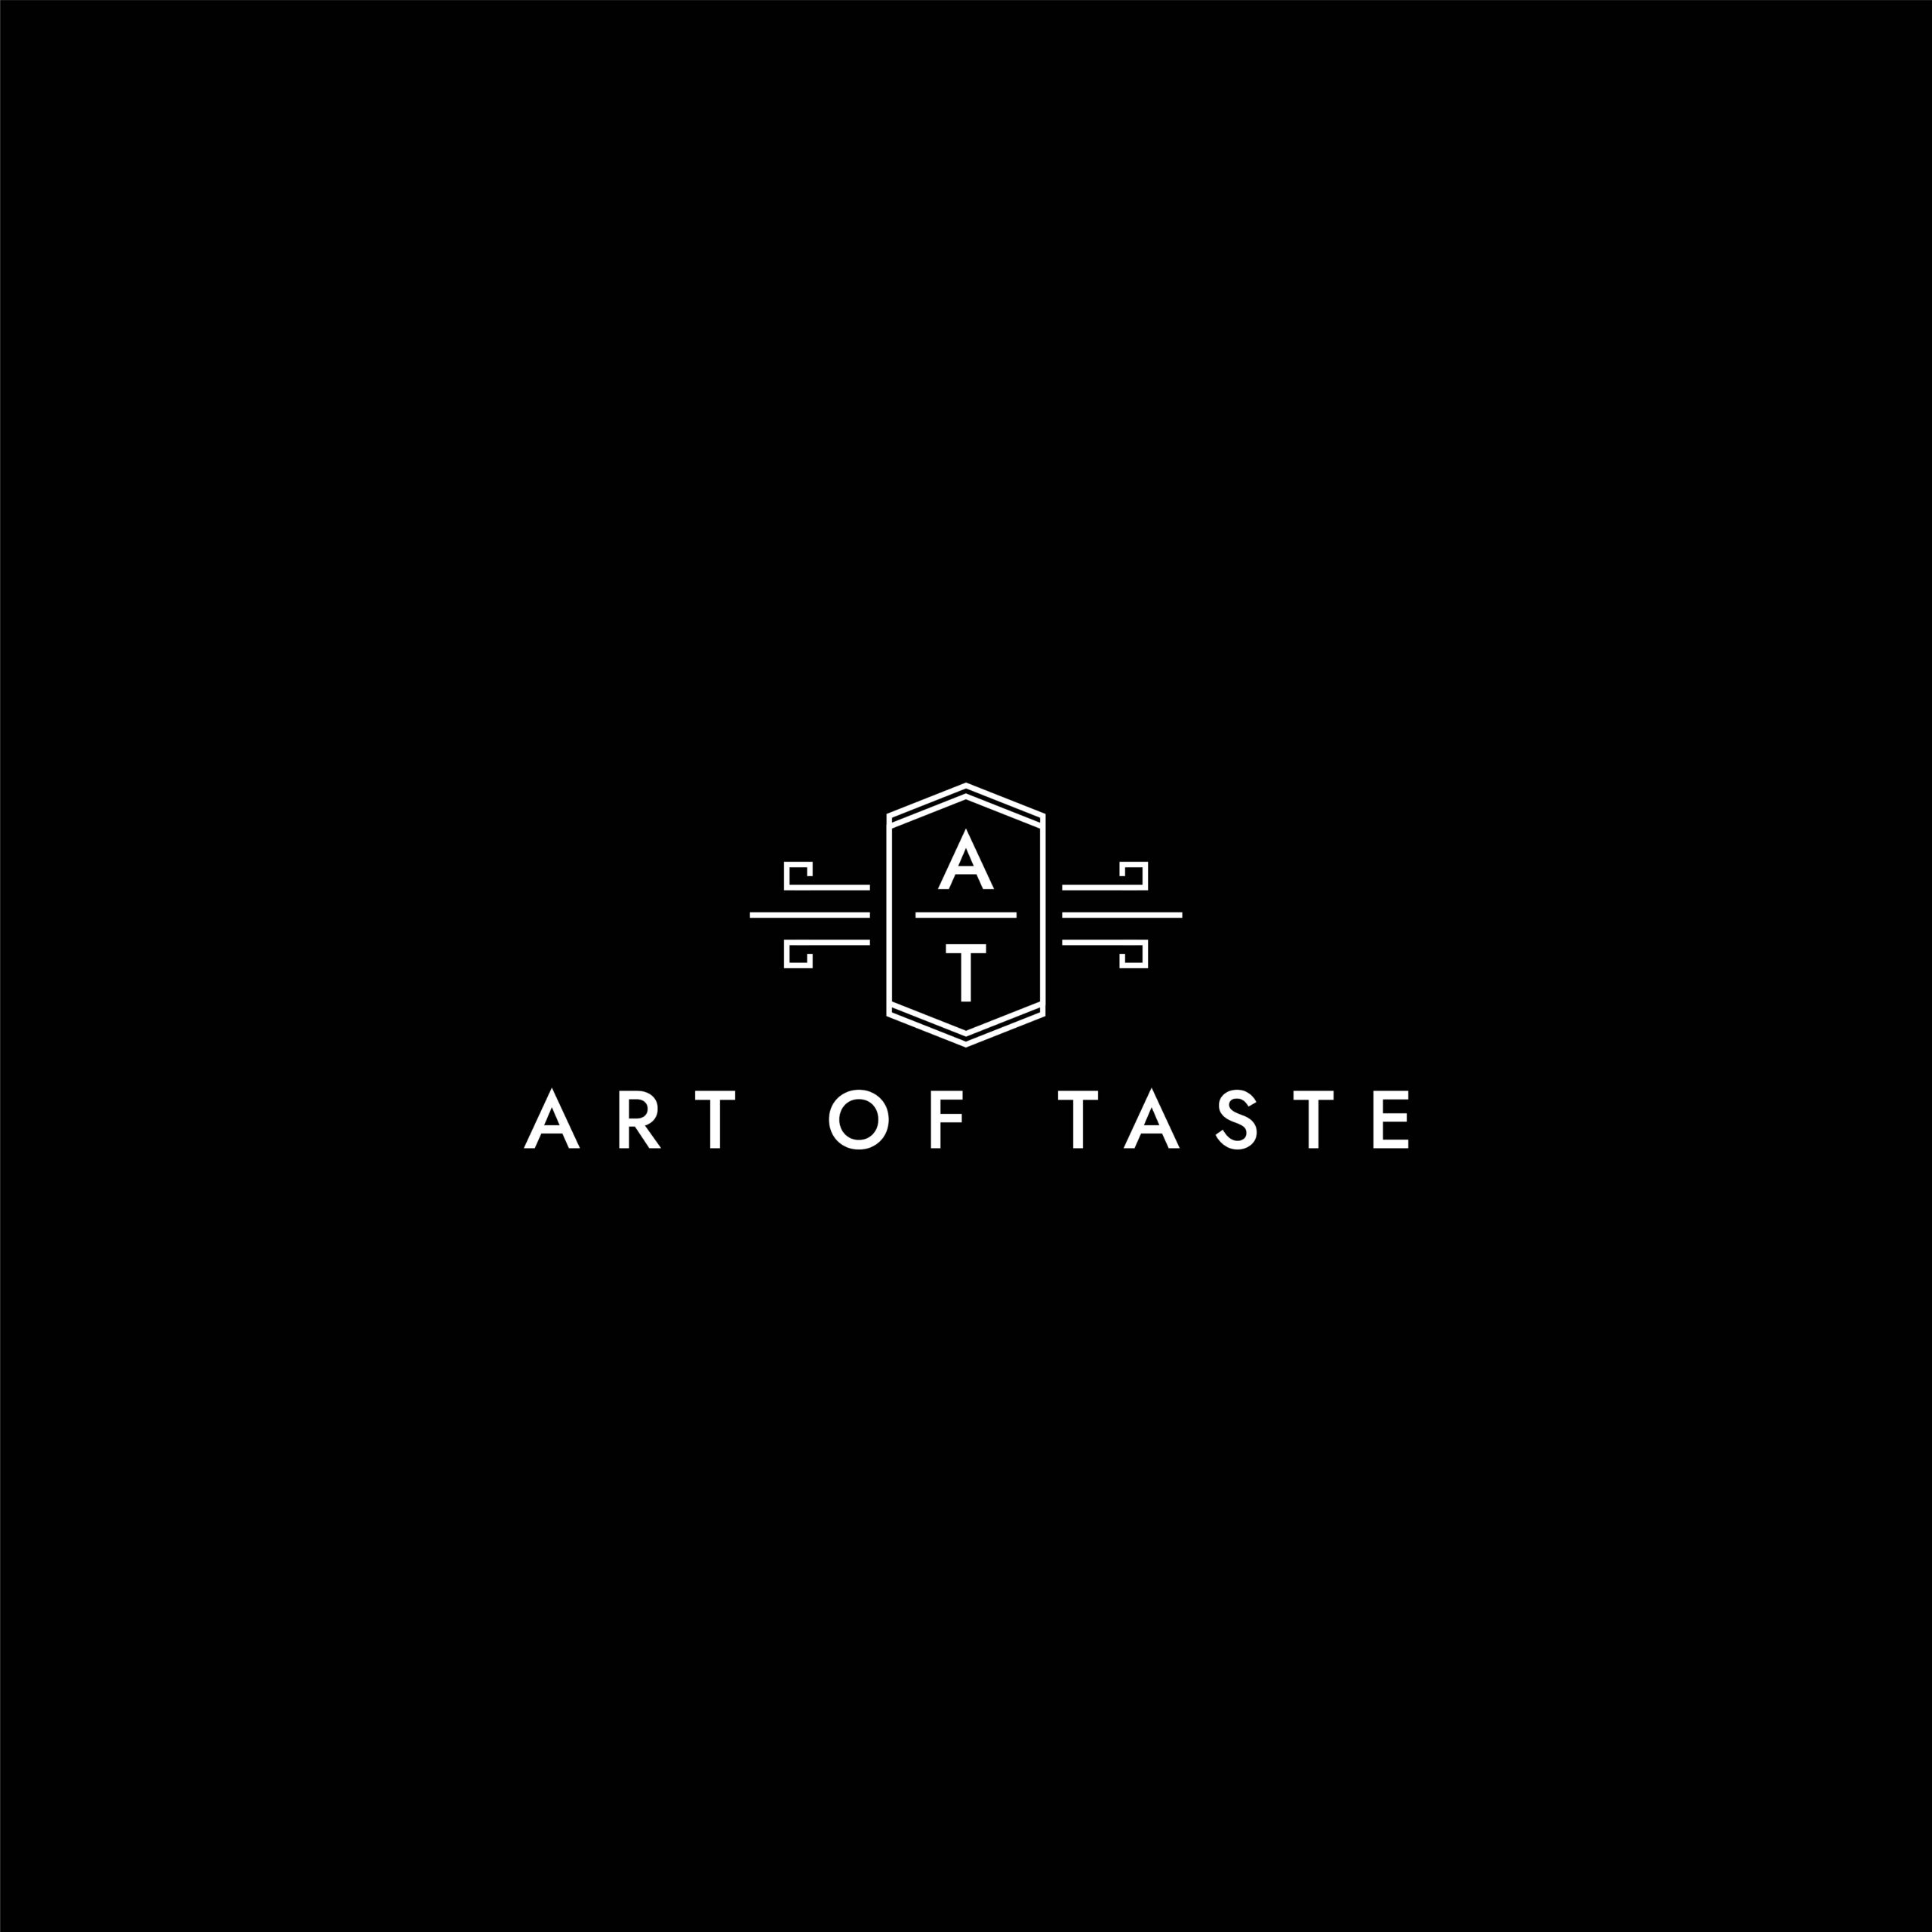 Art of taste logo black